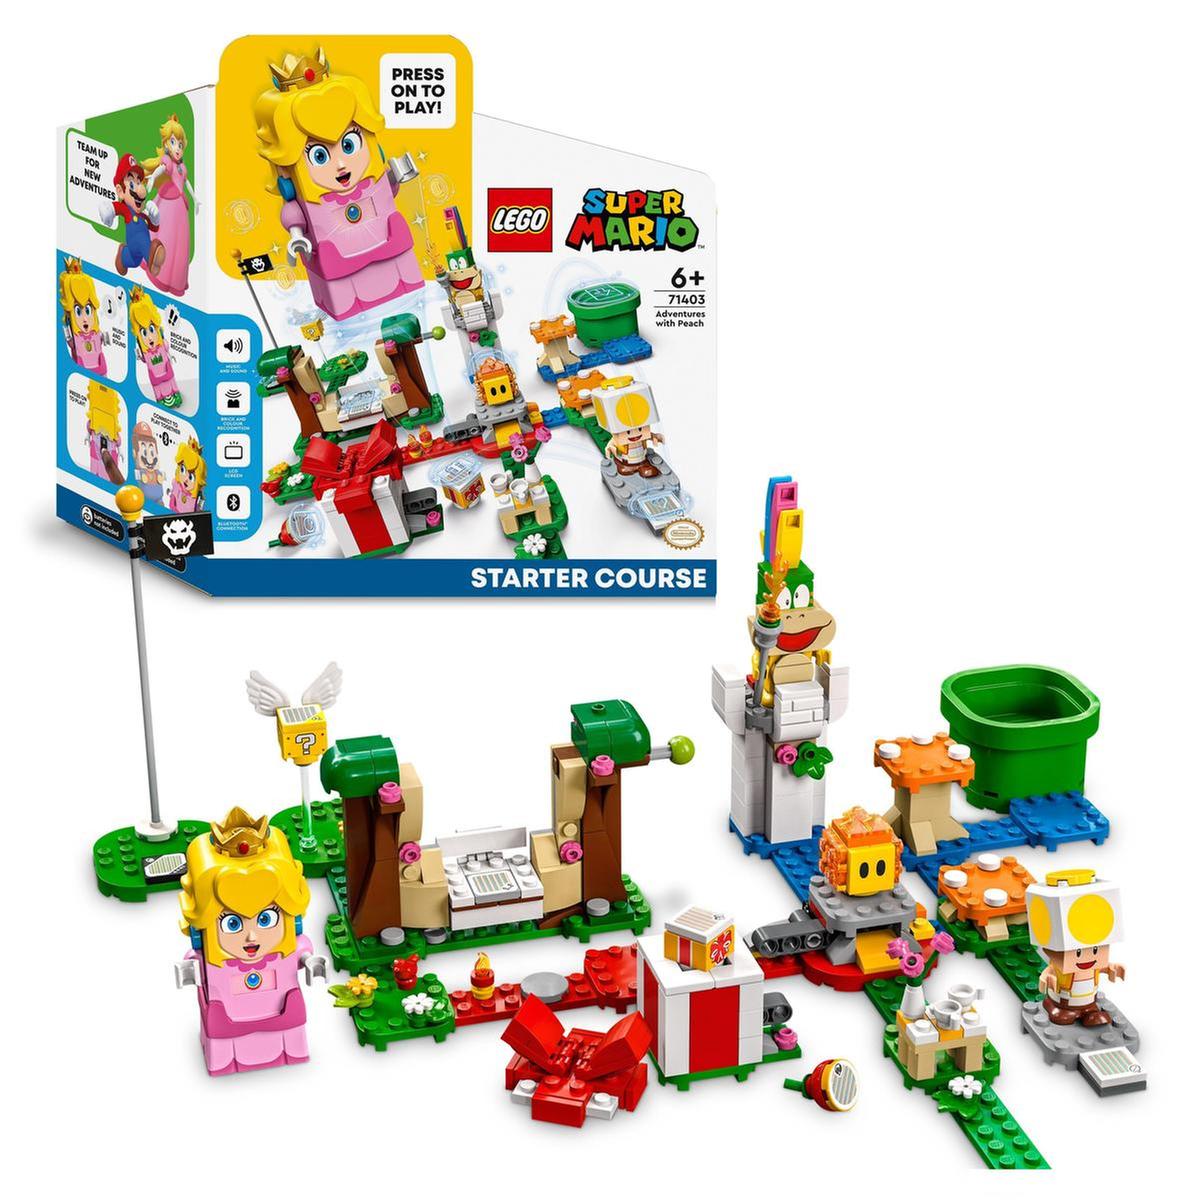 LEGO Super Mario - Pack Inicial: aventuras com Peach - 71403 | LEGO OUTRAS  LINHAS | Loja de brinquedos e videojogos Online Toysrus